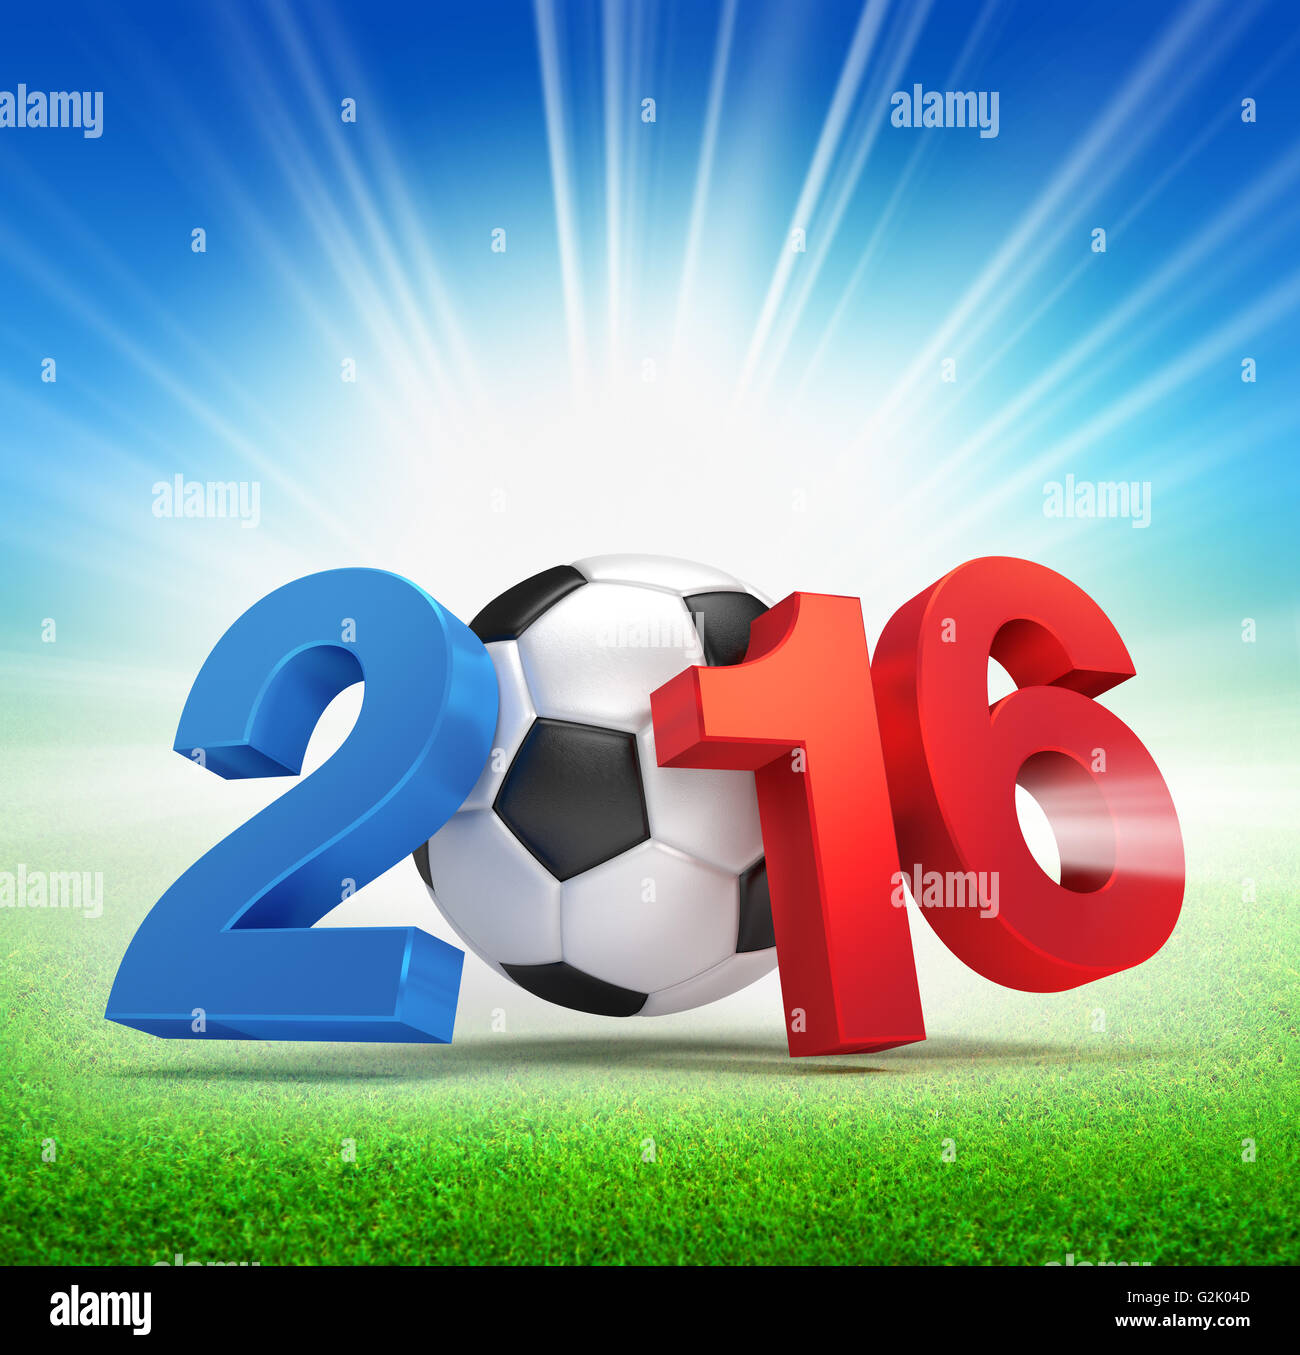 2016 Jahr französische Flagge farbig, illustriert mit einem Fußball und beleuchtet auf einer Wiese Stockfoto